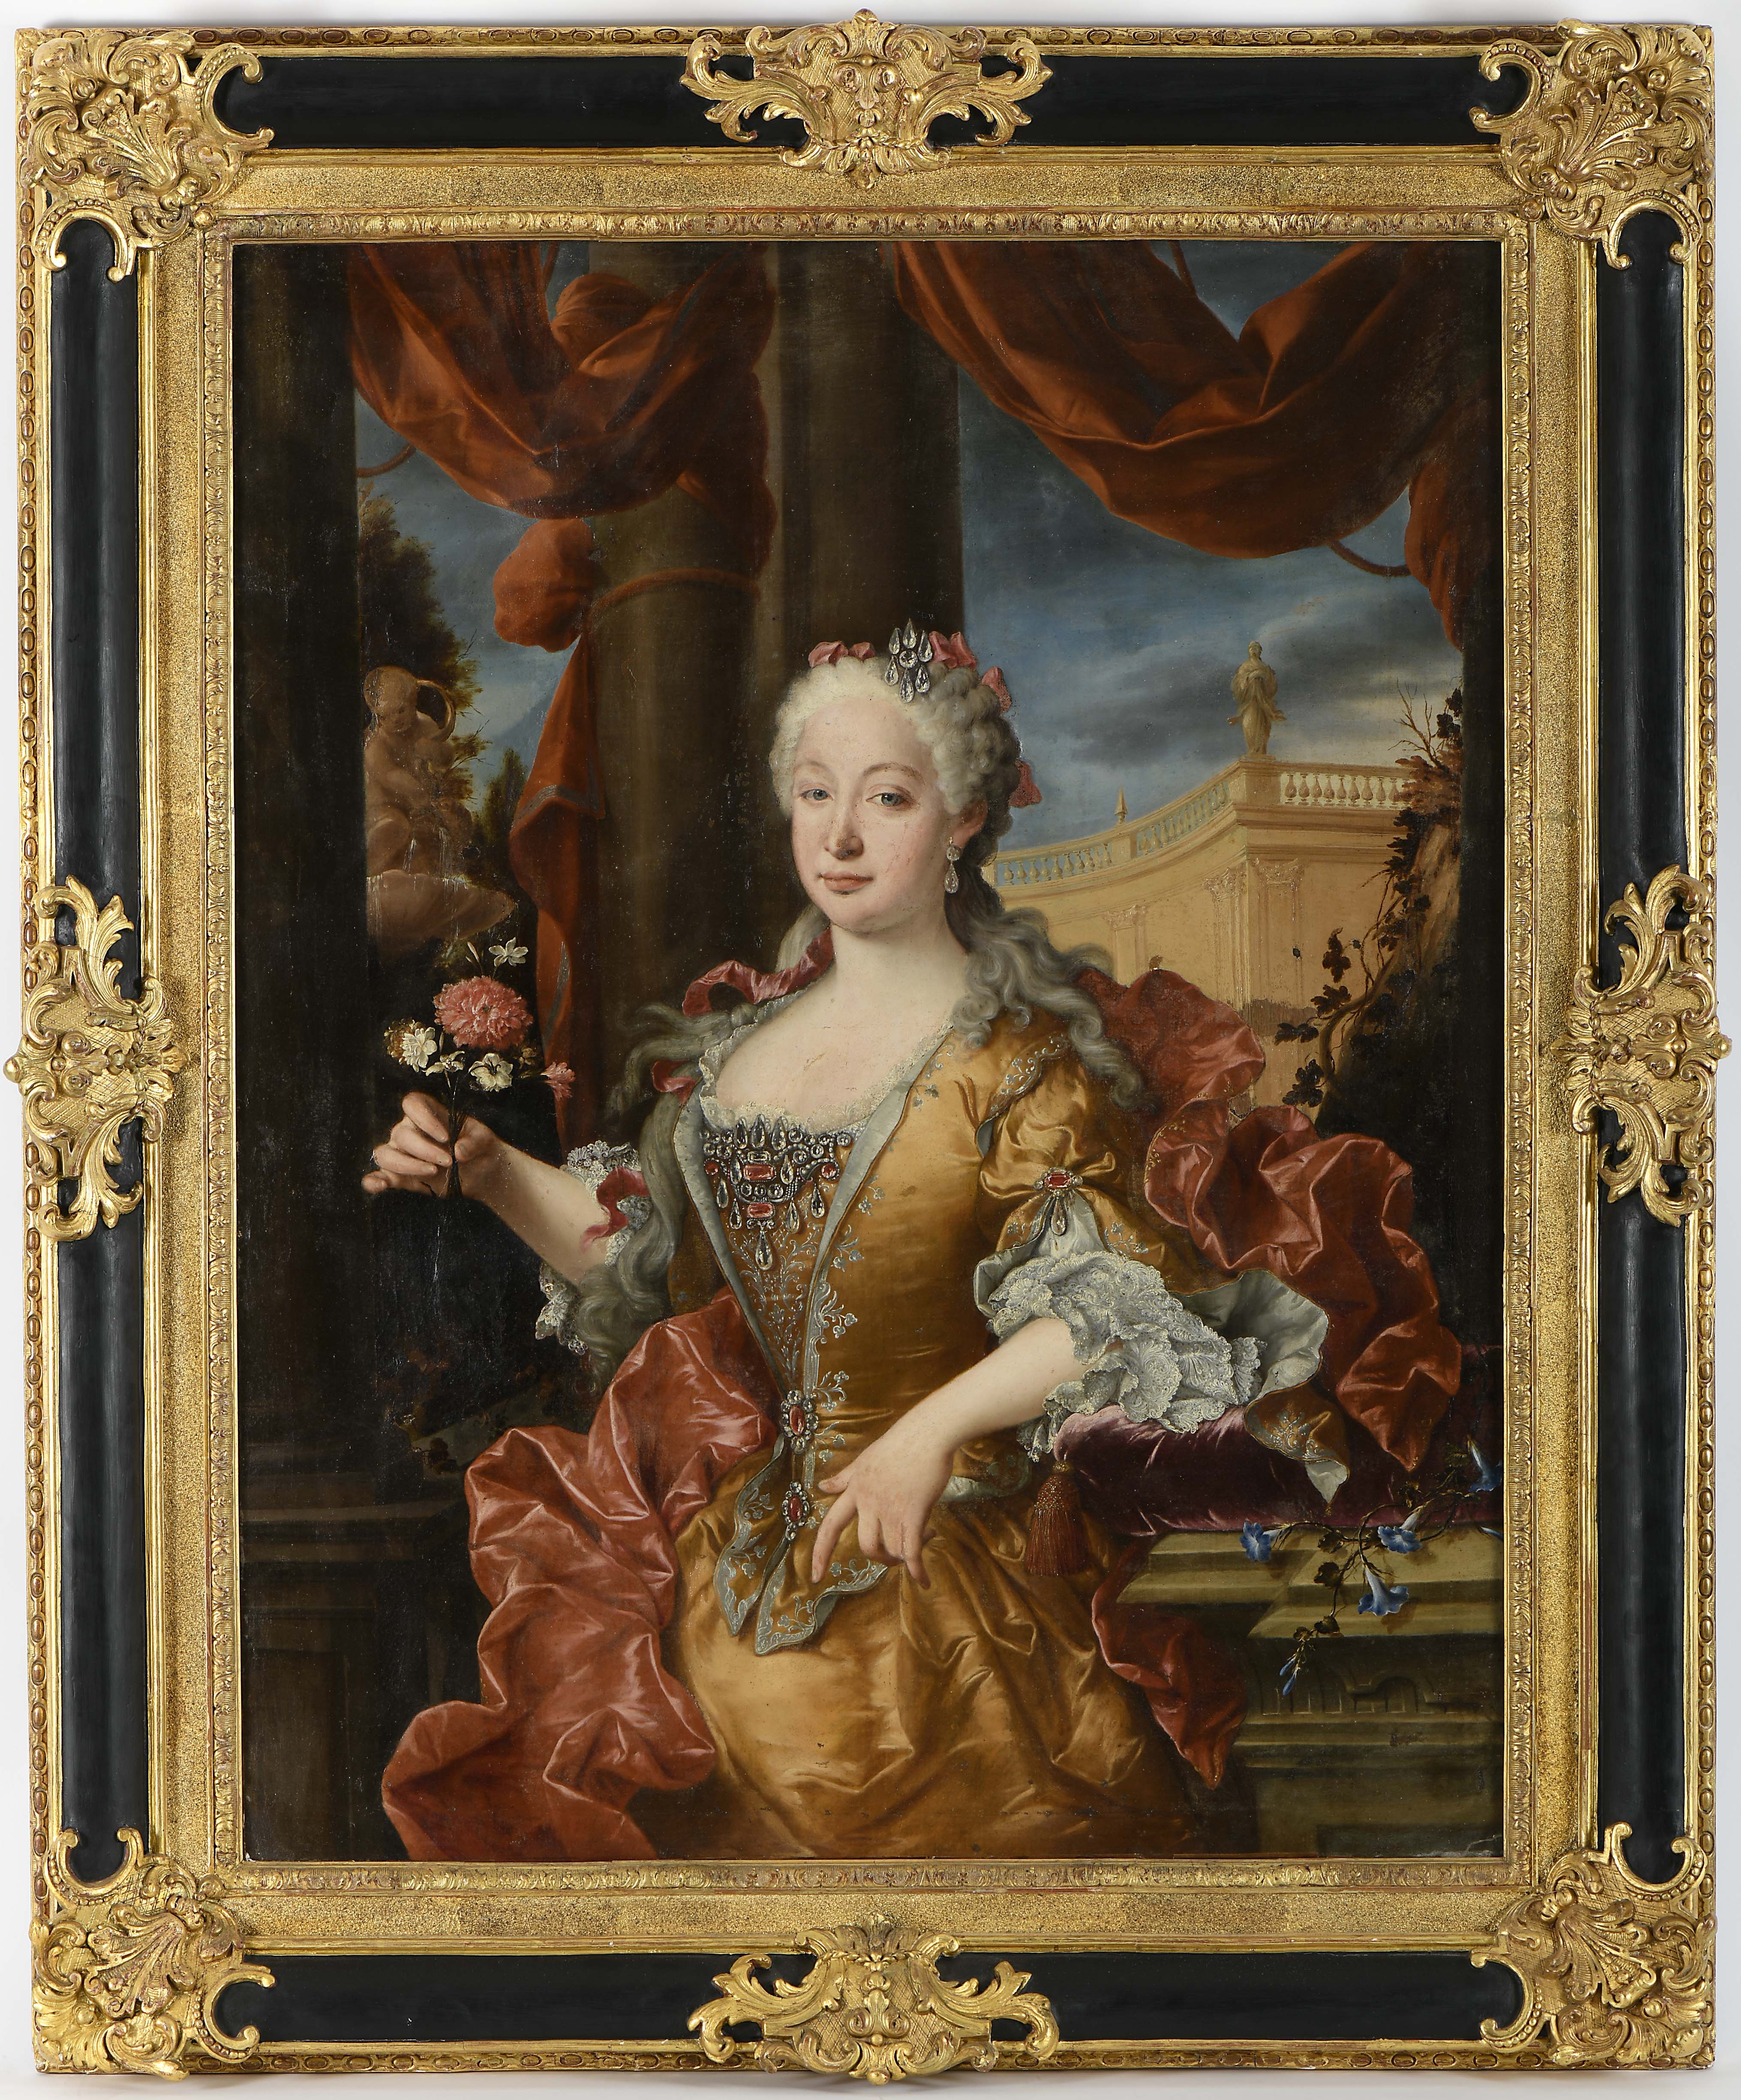 Portrait of Portuguese Infanta Dona Maria Bárbara of Braganza (1711-1758), Queen of Spain